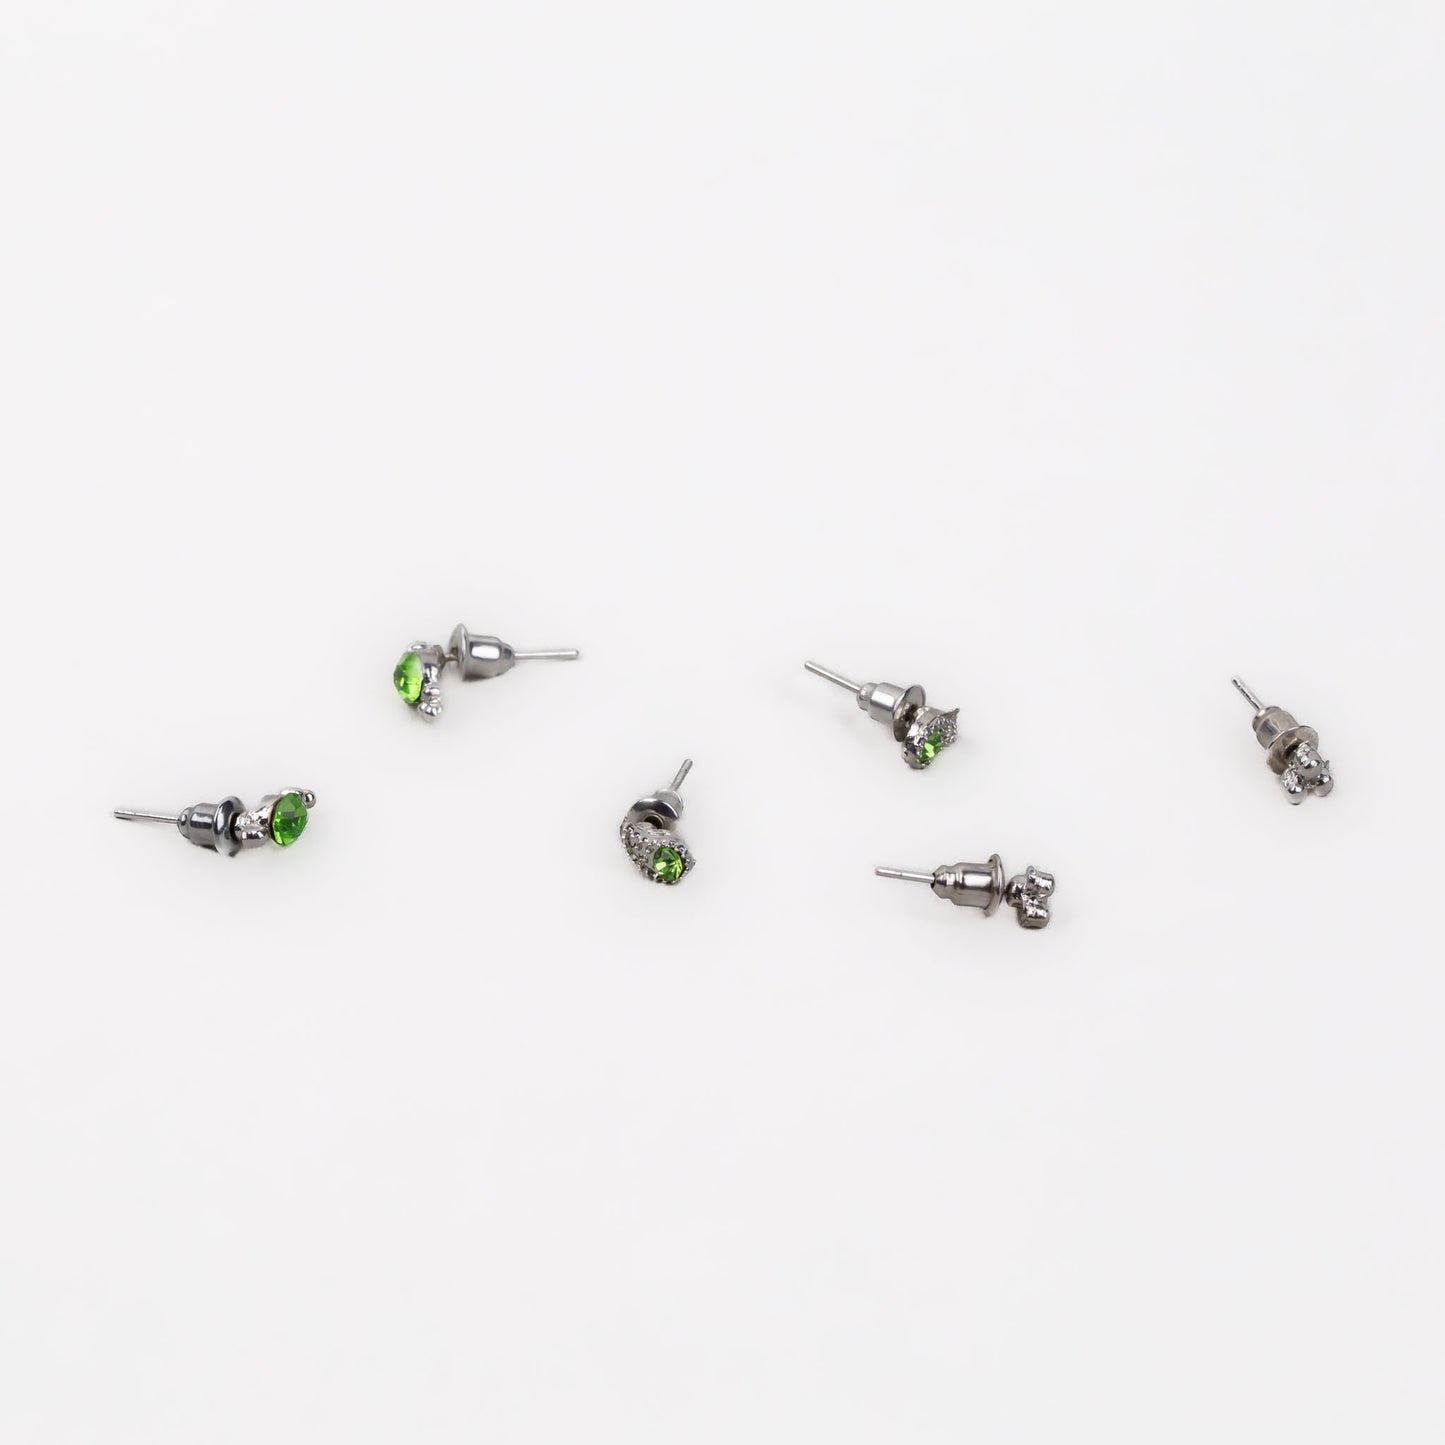 Cercei mici discreți cu formă de lacrimă, amuletă și pietre, set 3 perechi - Verde Deschis